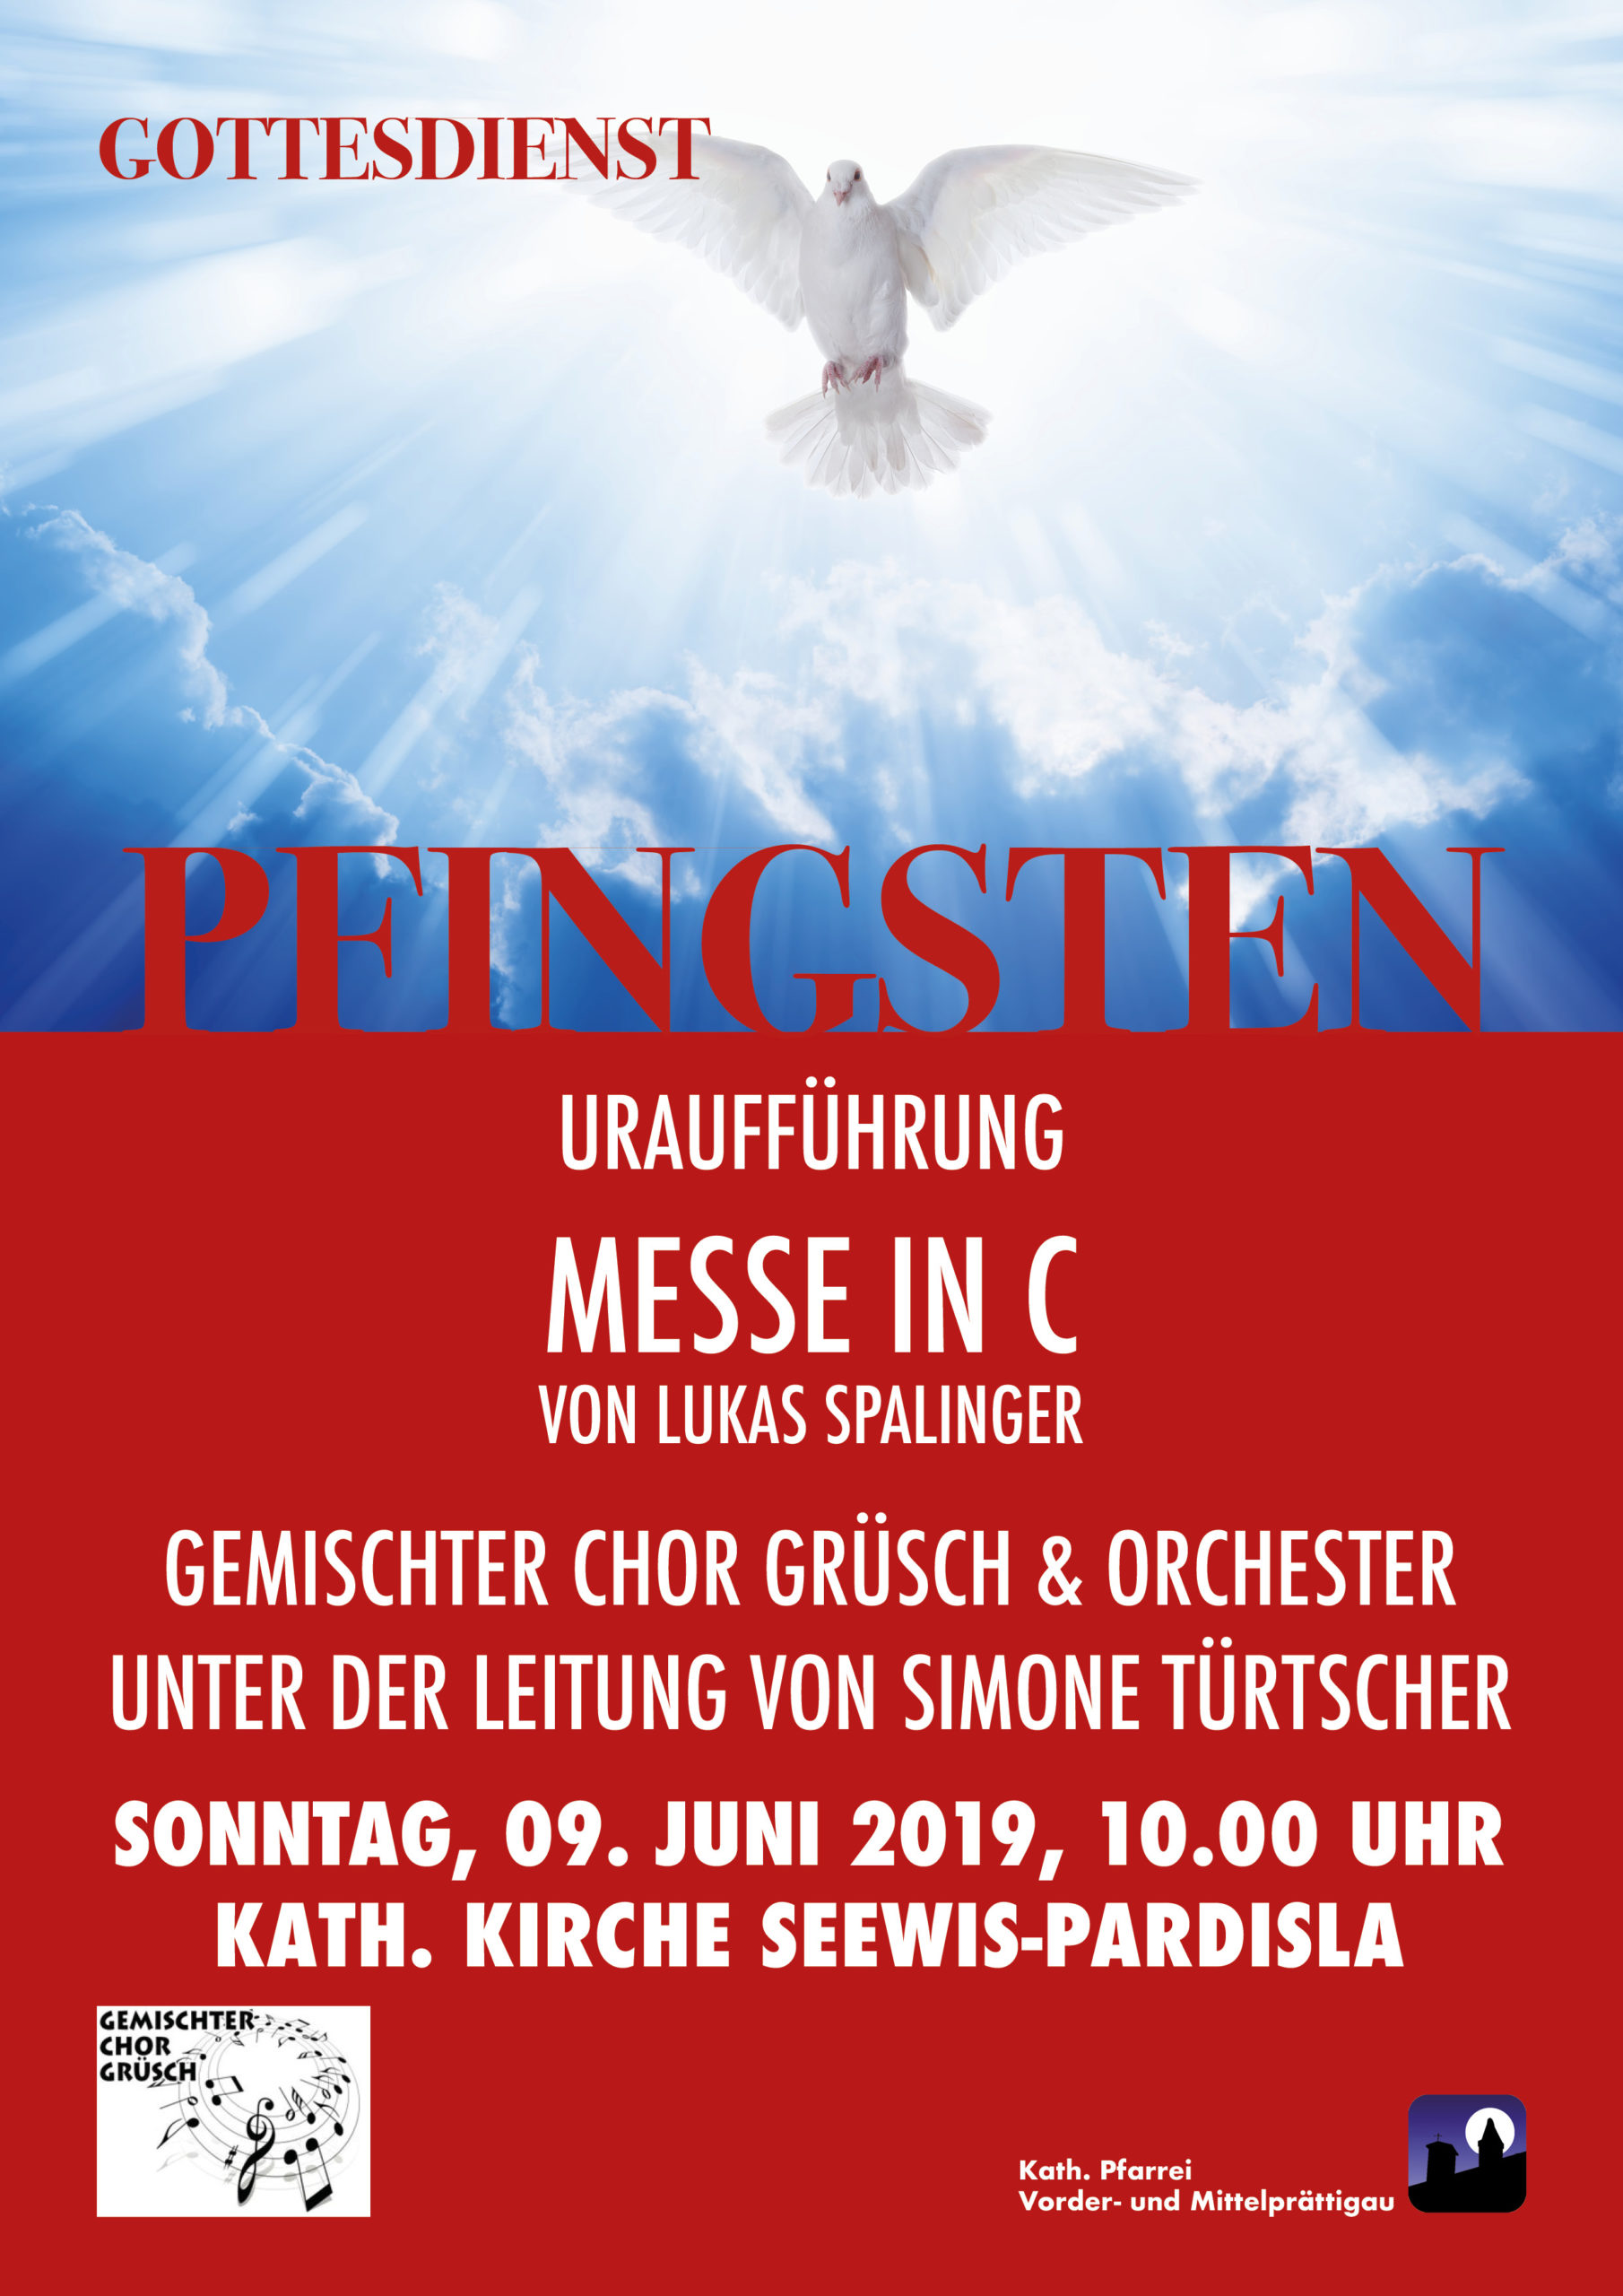 Uraufführung "Messe in C" an Pfingsten